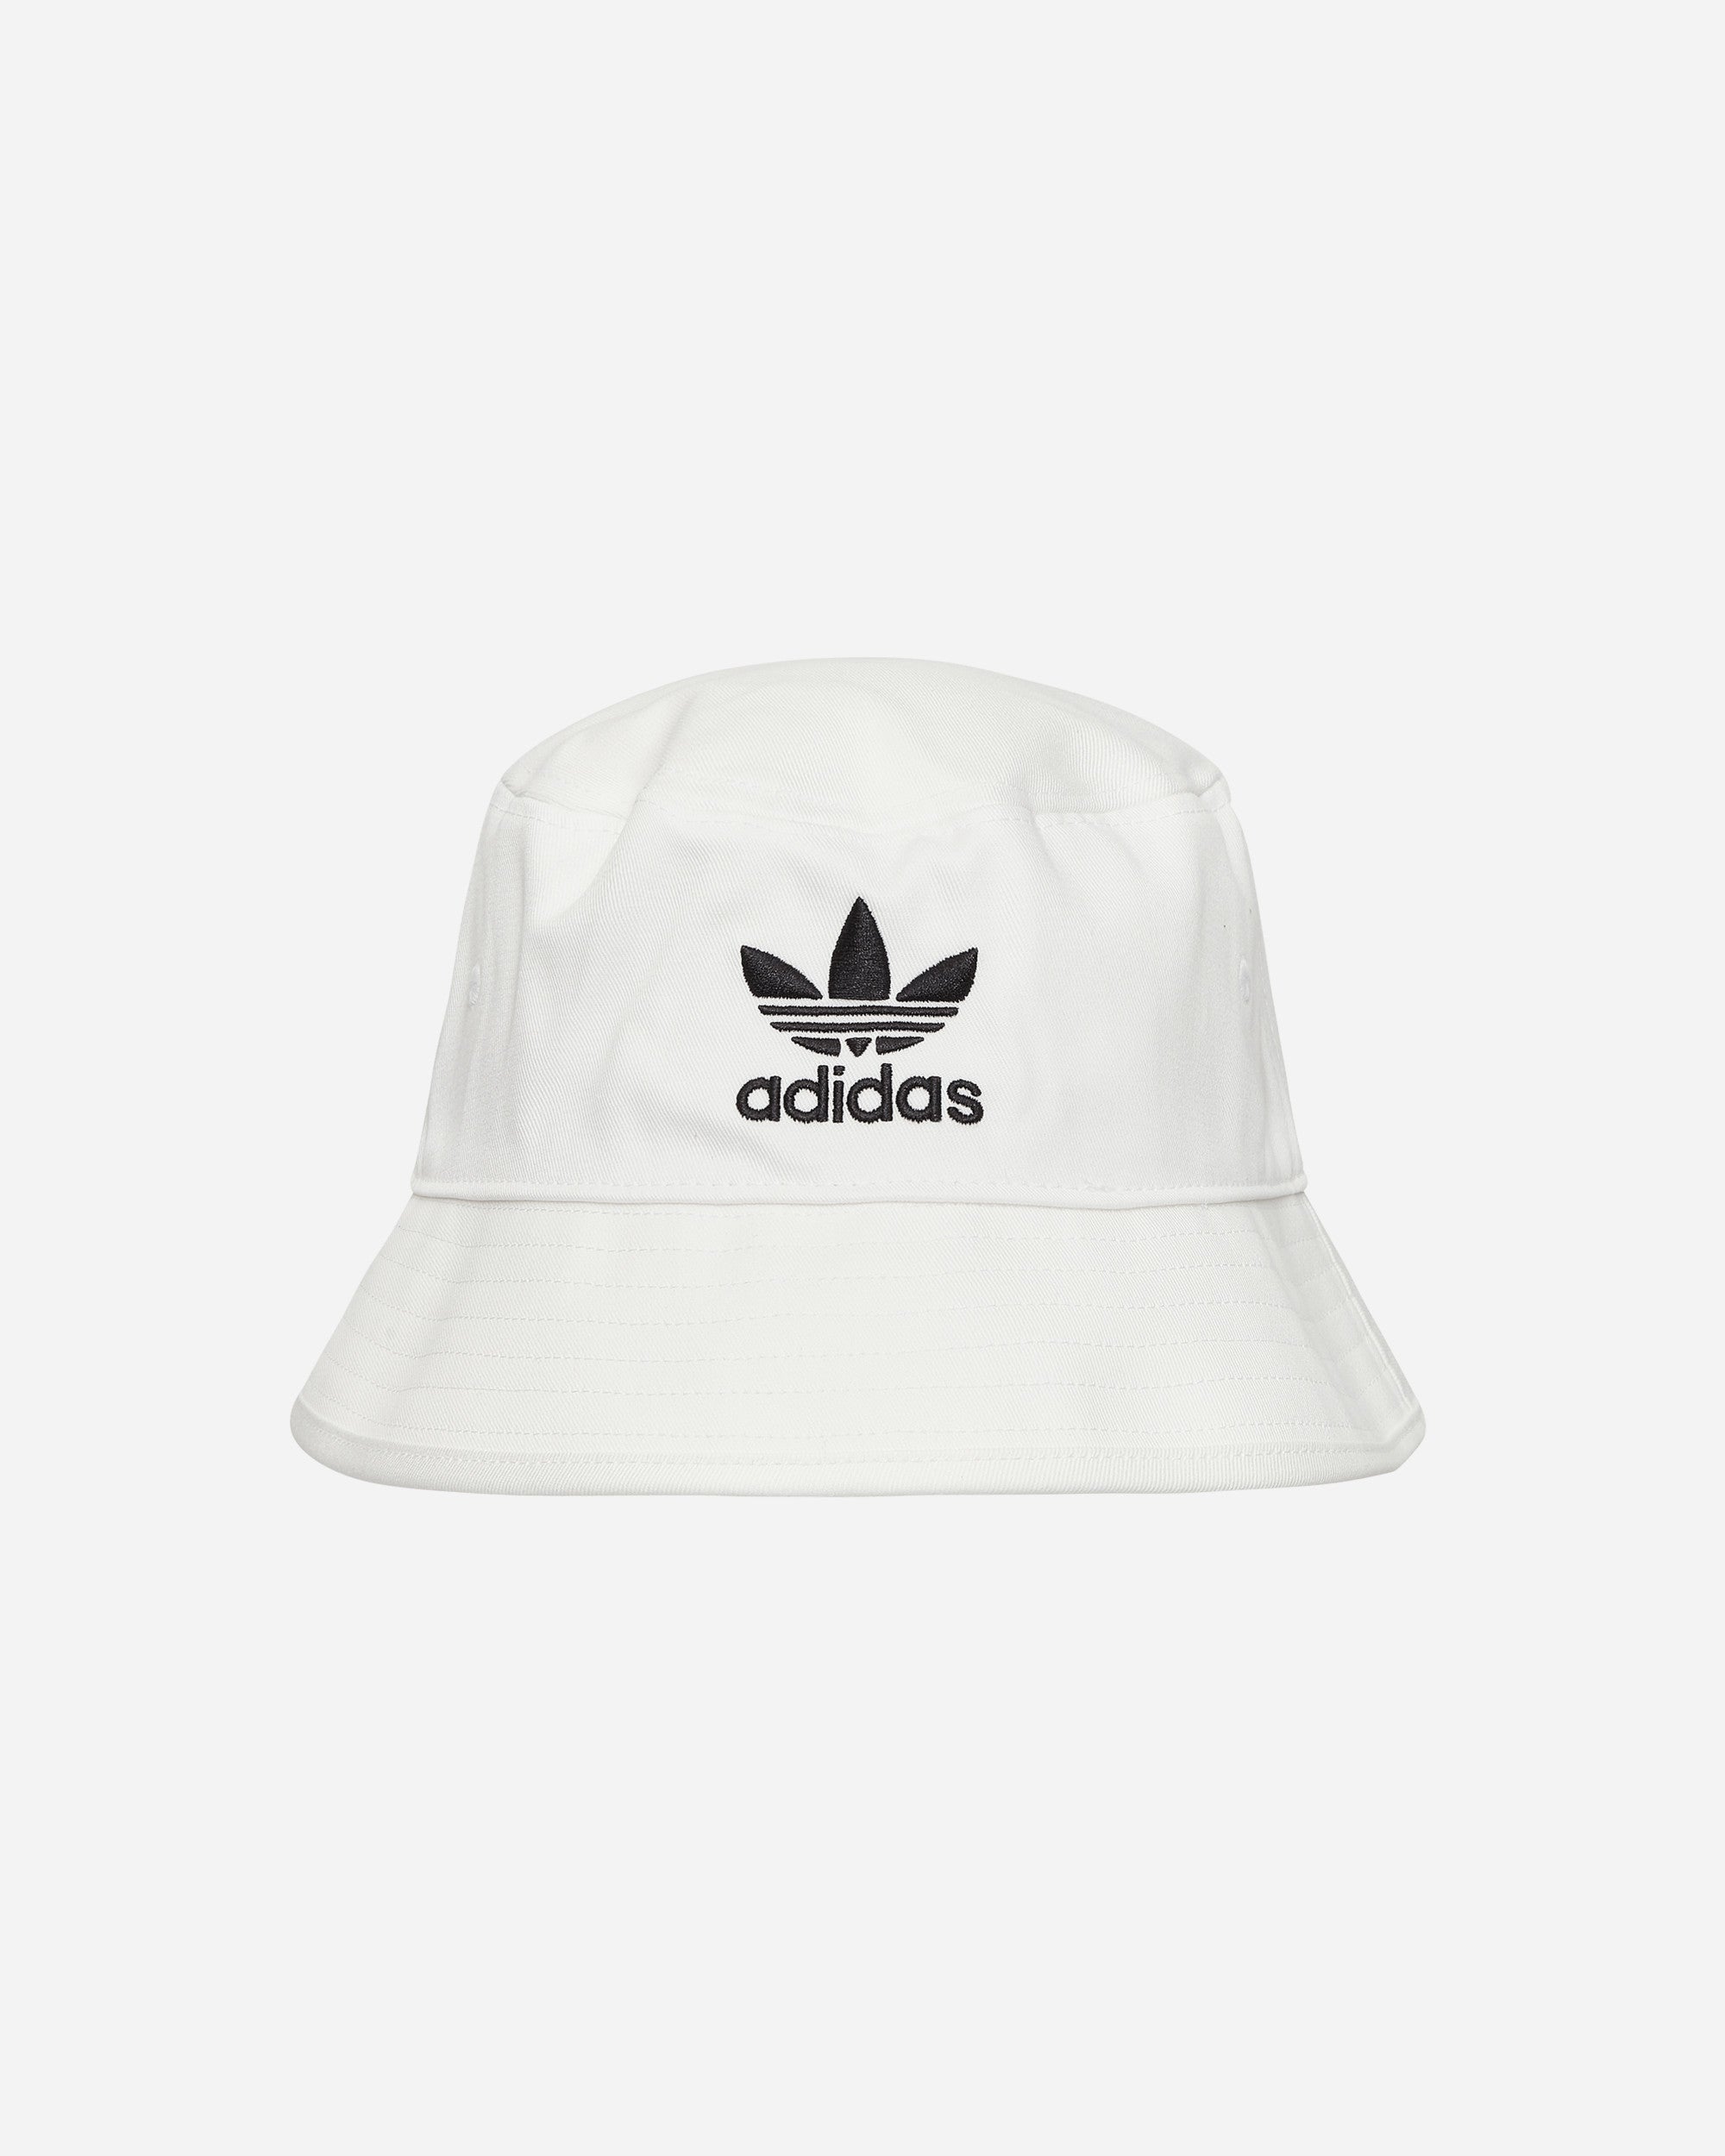 adidas Originals Bucket Hat Ac White Hats Bucket FQ4641